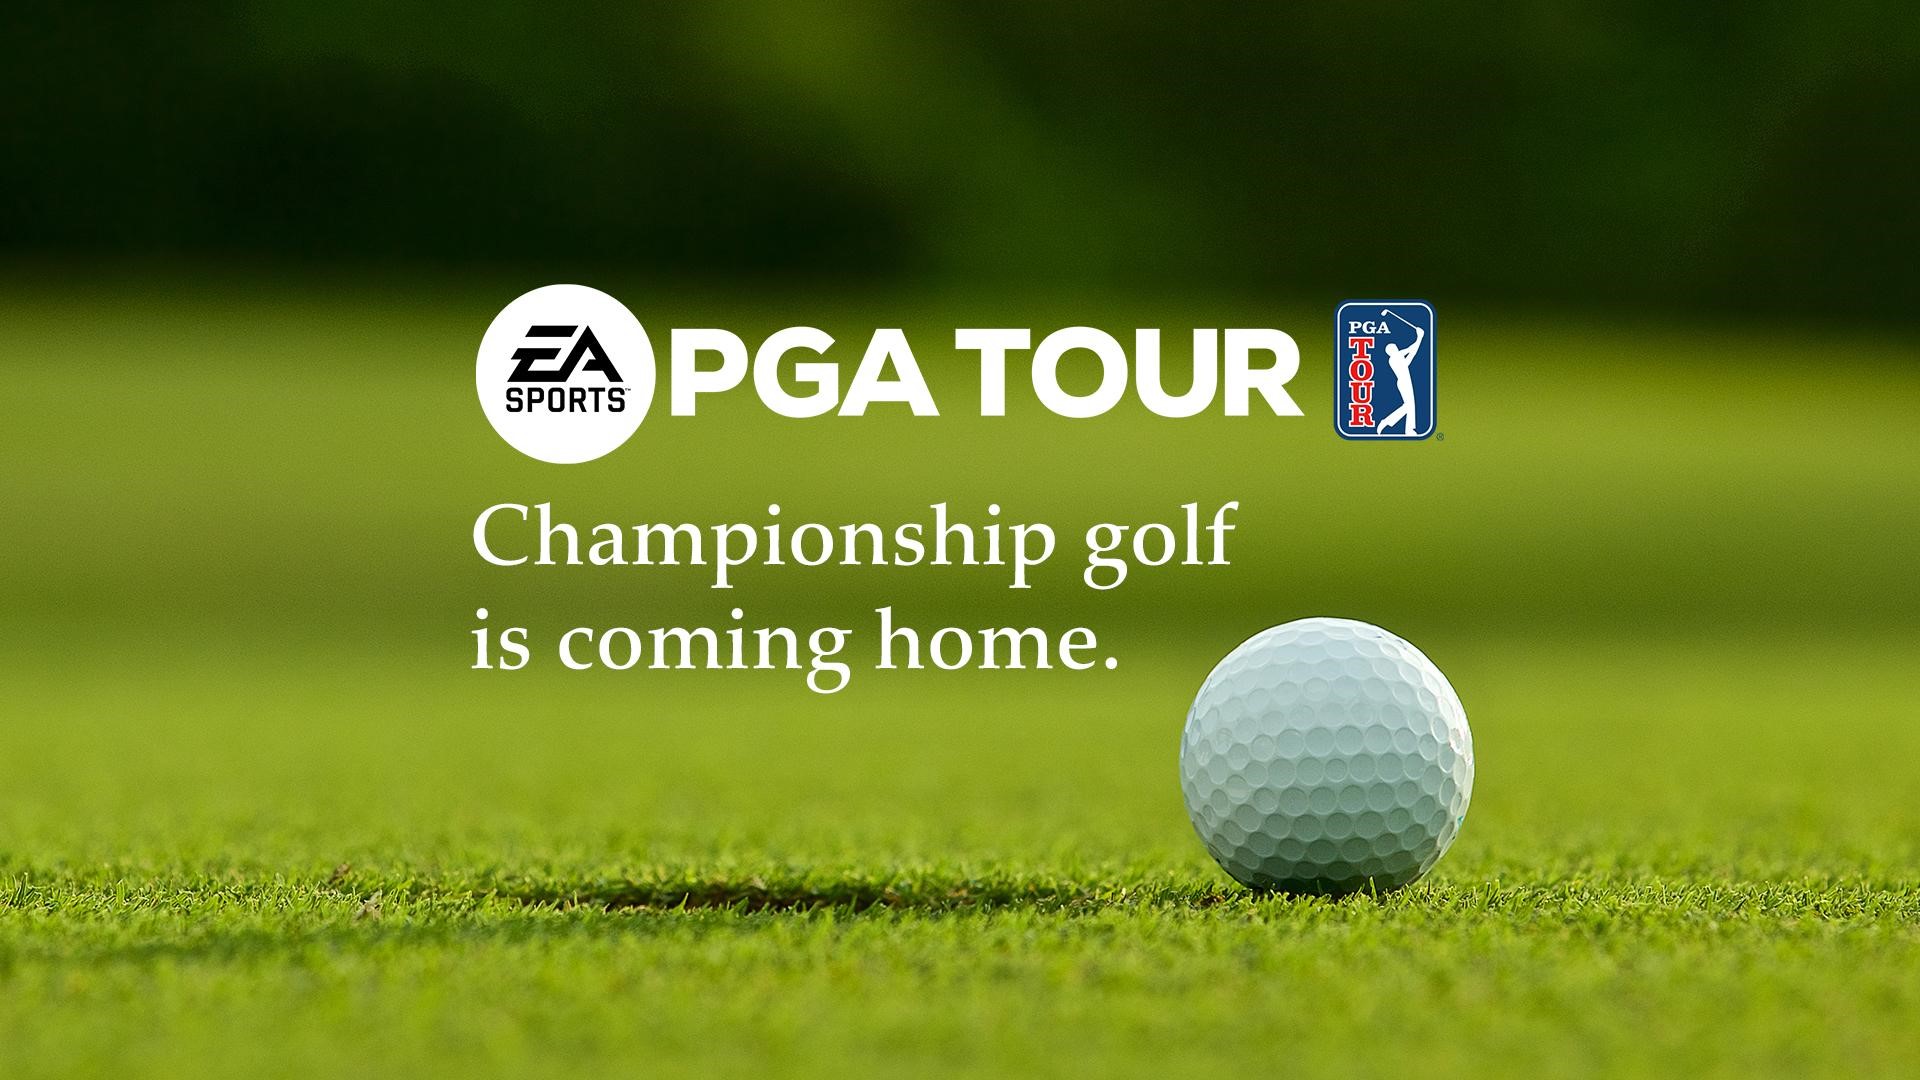 Electronic Arts anunció EA SPORTS PGA TOUR, un nuevo videojuego de golf de nueva generación, actualmente en desarrollo.